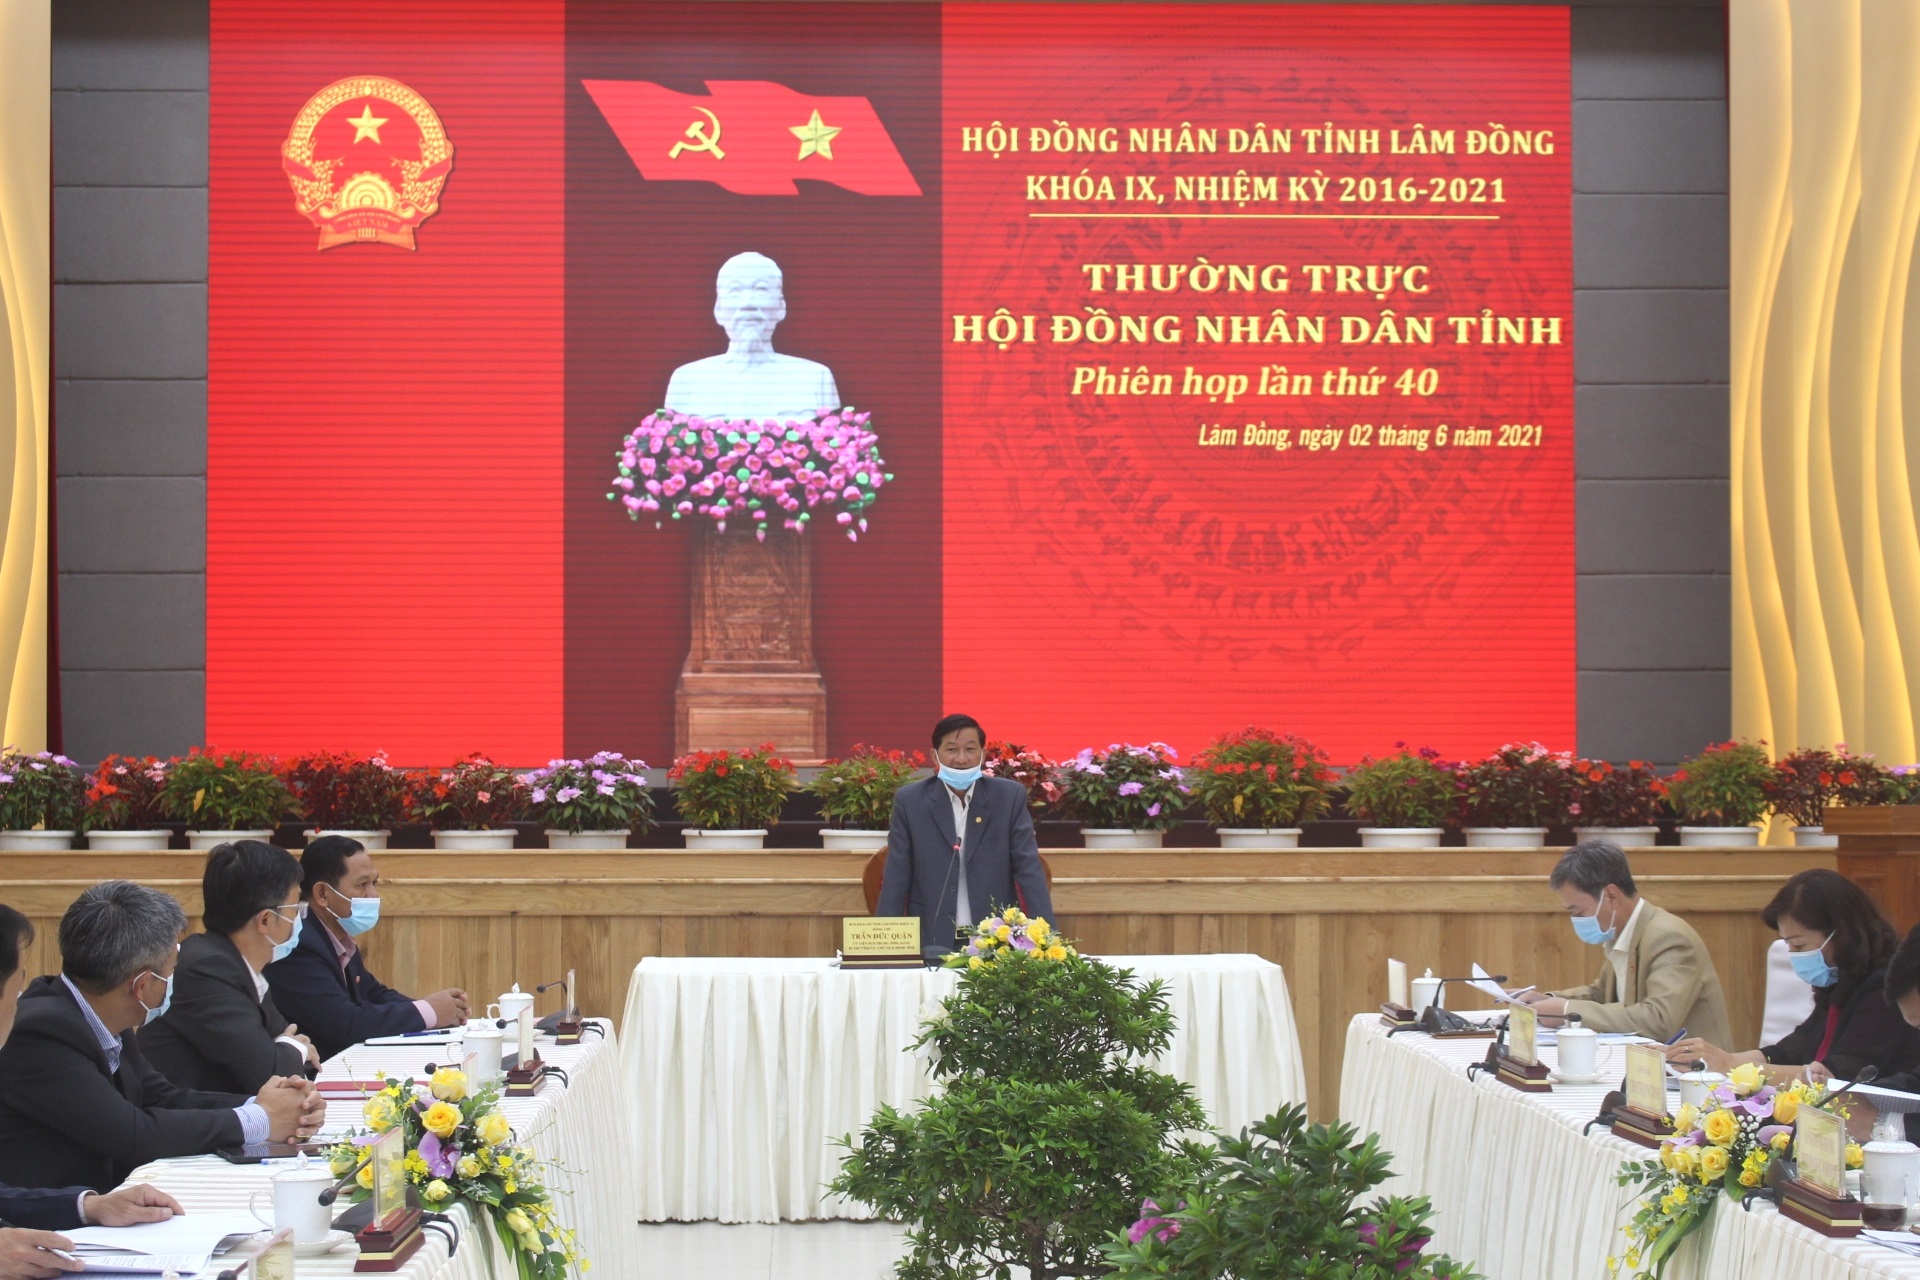 Phiên họp thứ 40 của Thường trực HĐND tỉnh Lâm Đồng cho ý kiến về Kỳ họp thứ Nhất của HĐND tỉnh Khóa X - ẢNH L. NGUYÊN